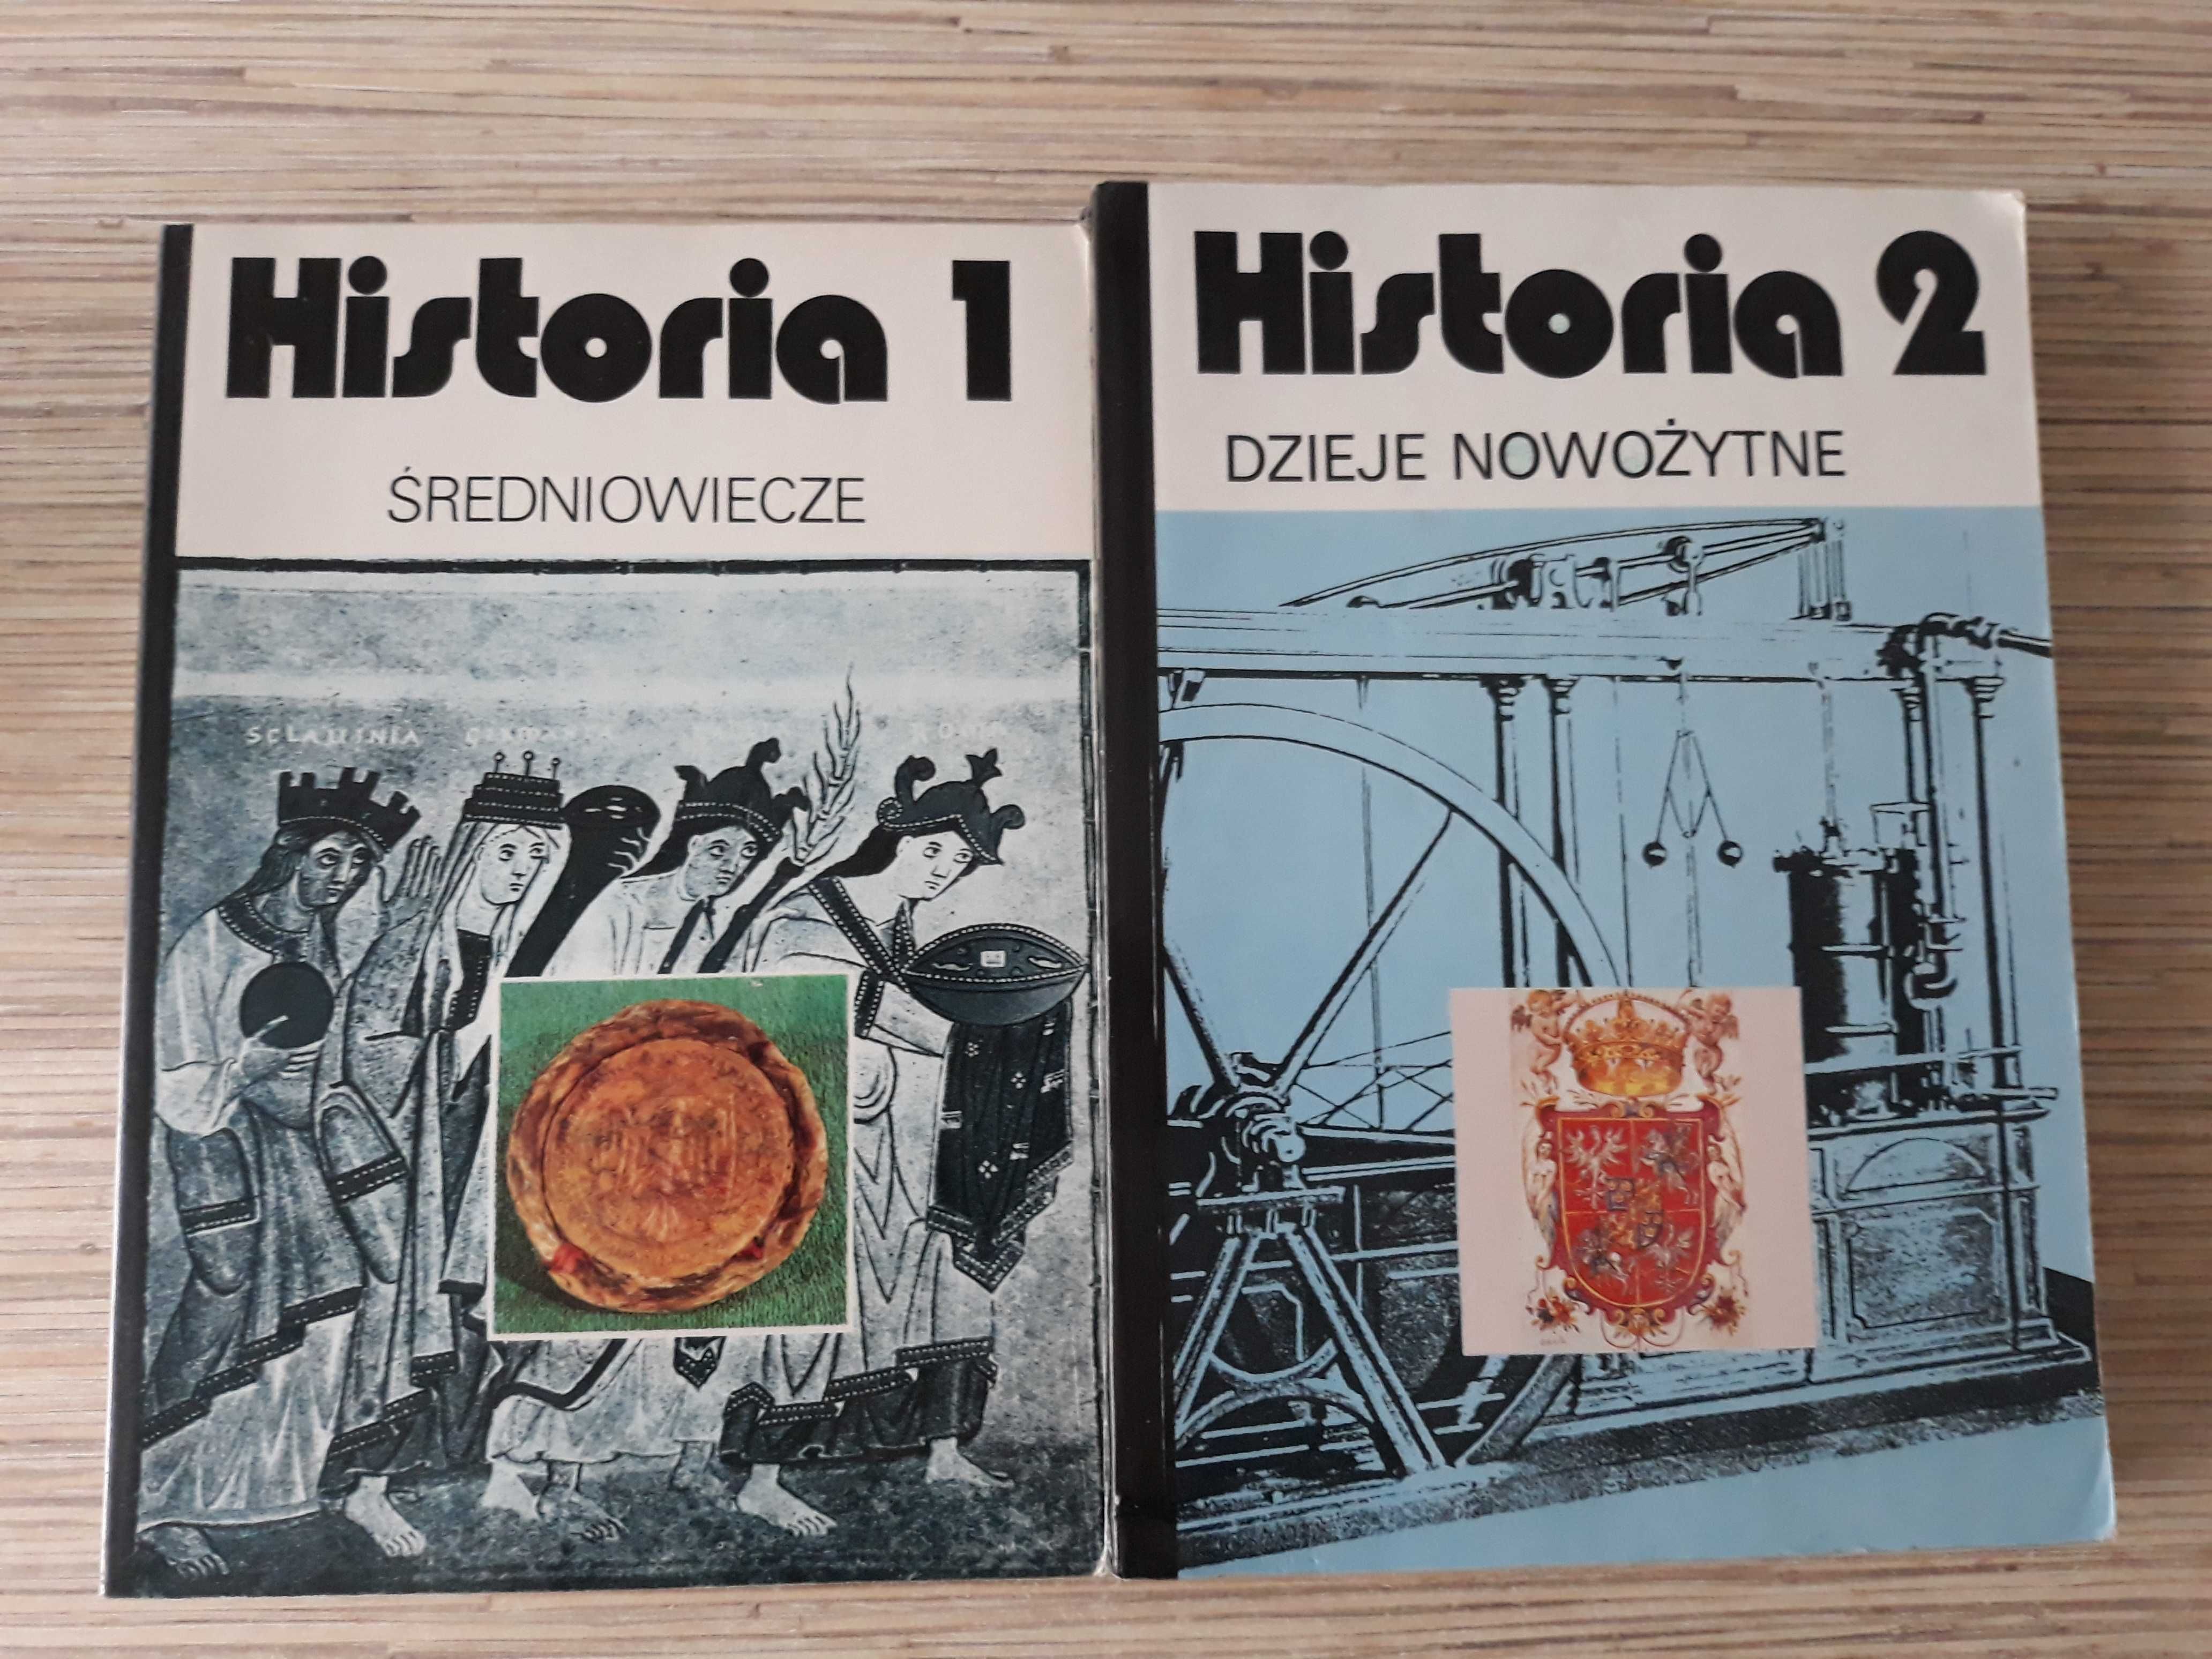 Historia 1 (średniowiecze) i Historia 2 (dzieje nowożytne)